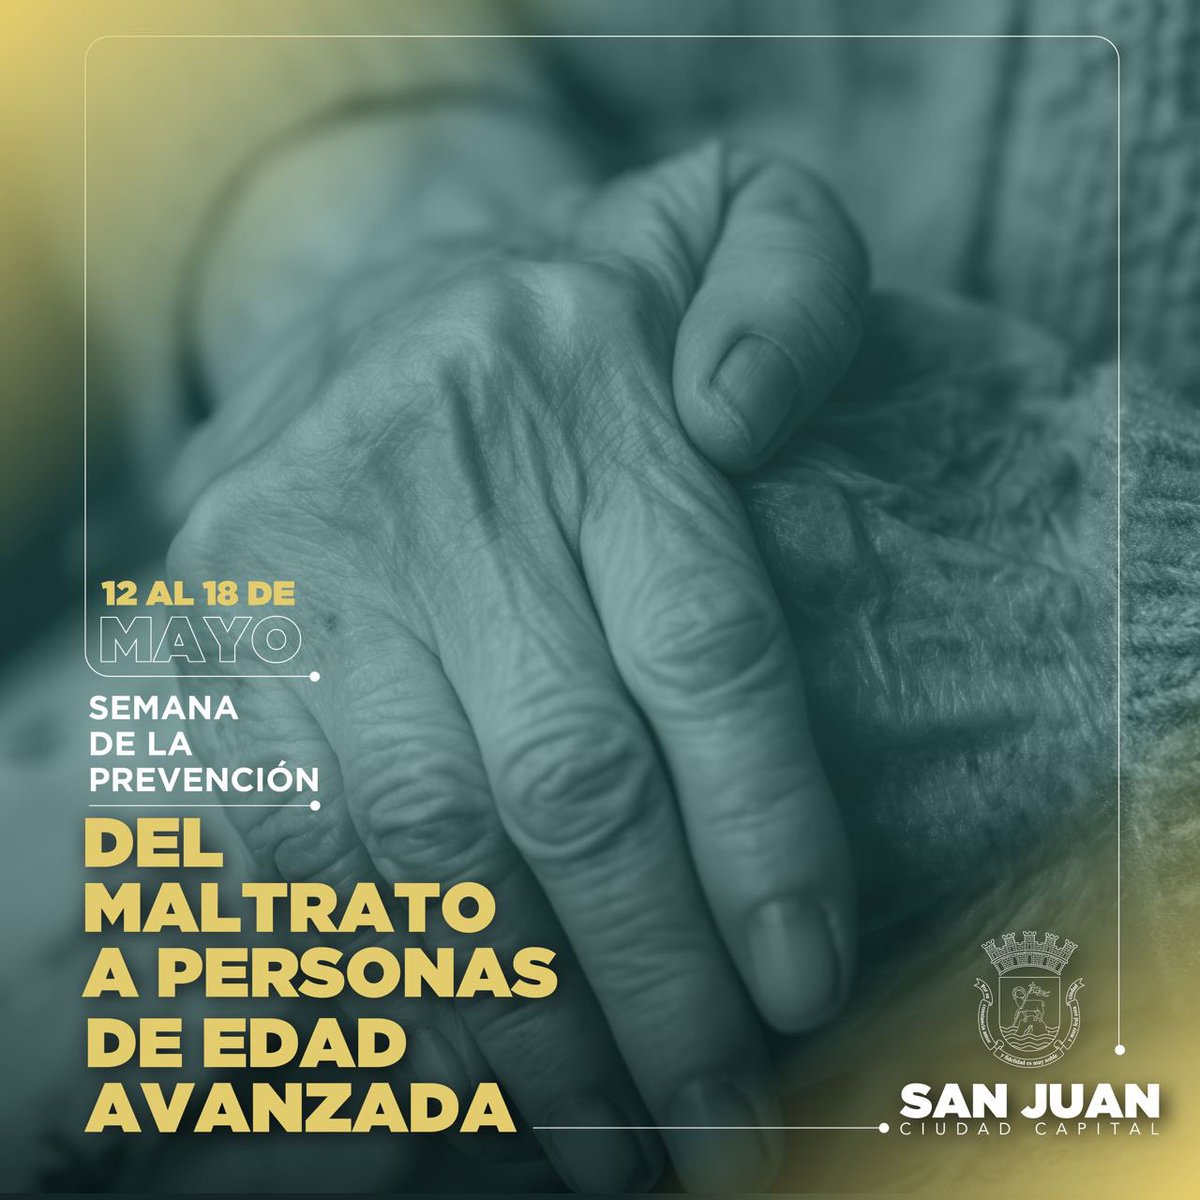 Cuidemos a nuestros viejos, ya ellos nos dieron sus mejores años, es momento de brindarles cariño apoyo y amor. #SanJuan #CiudadCapitalPR